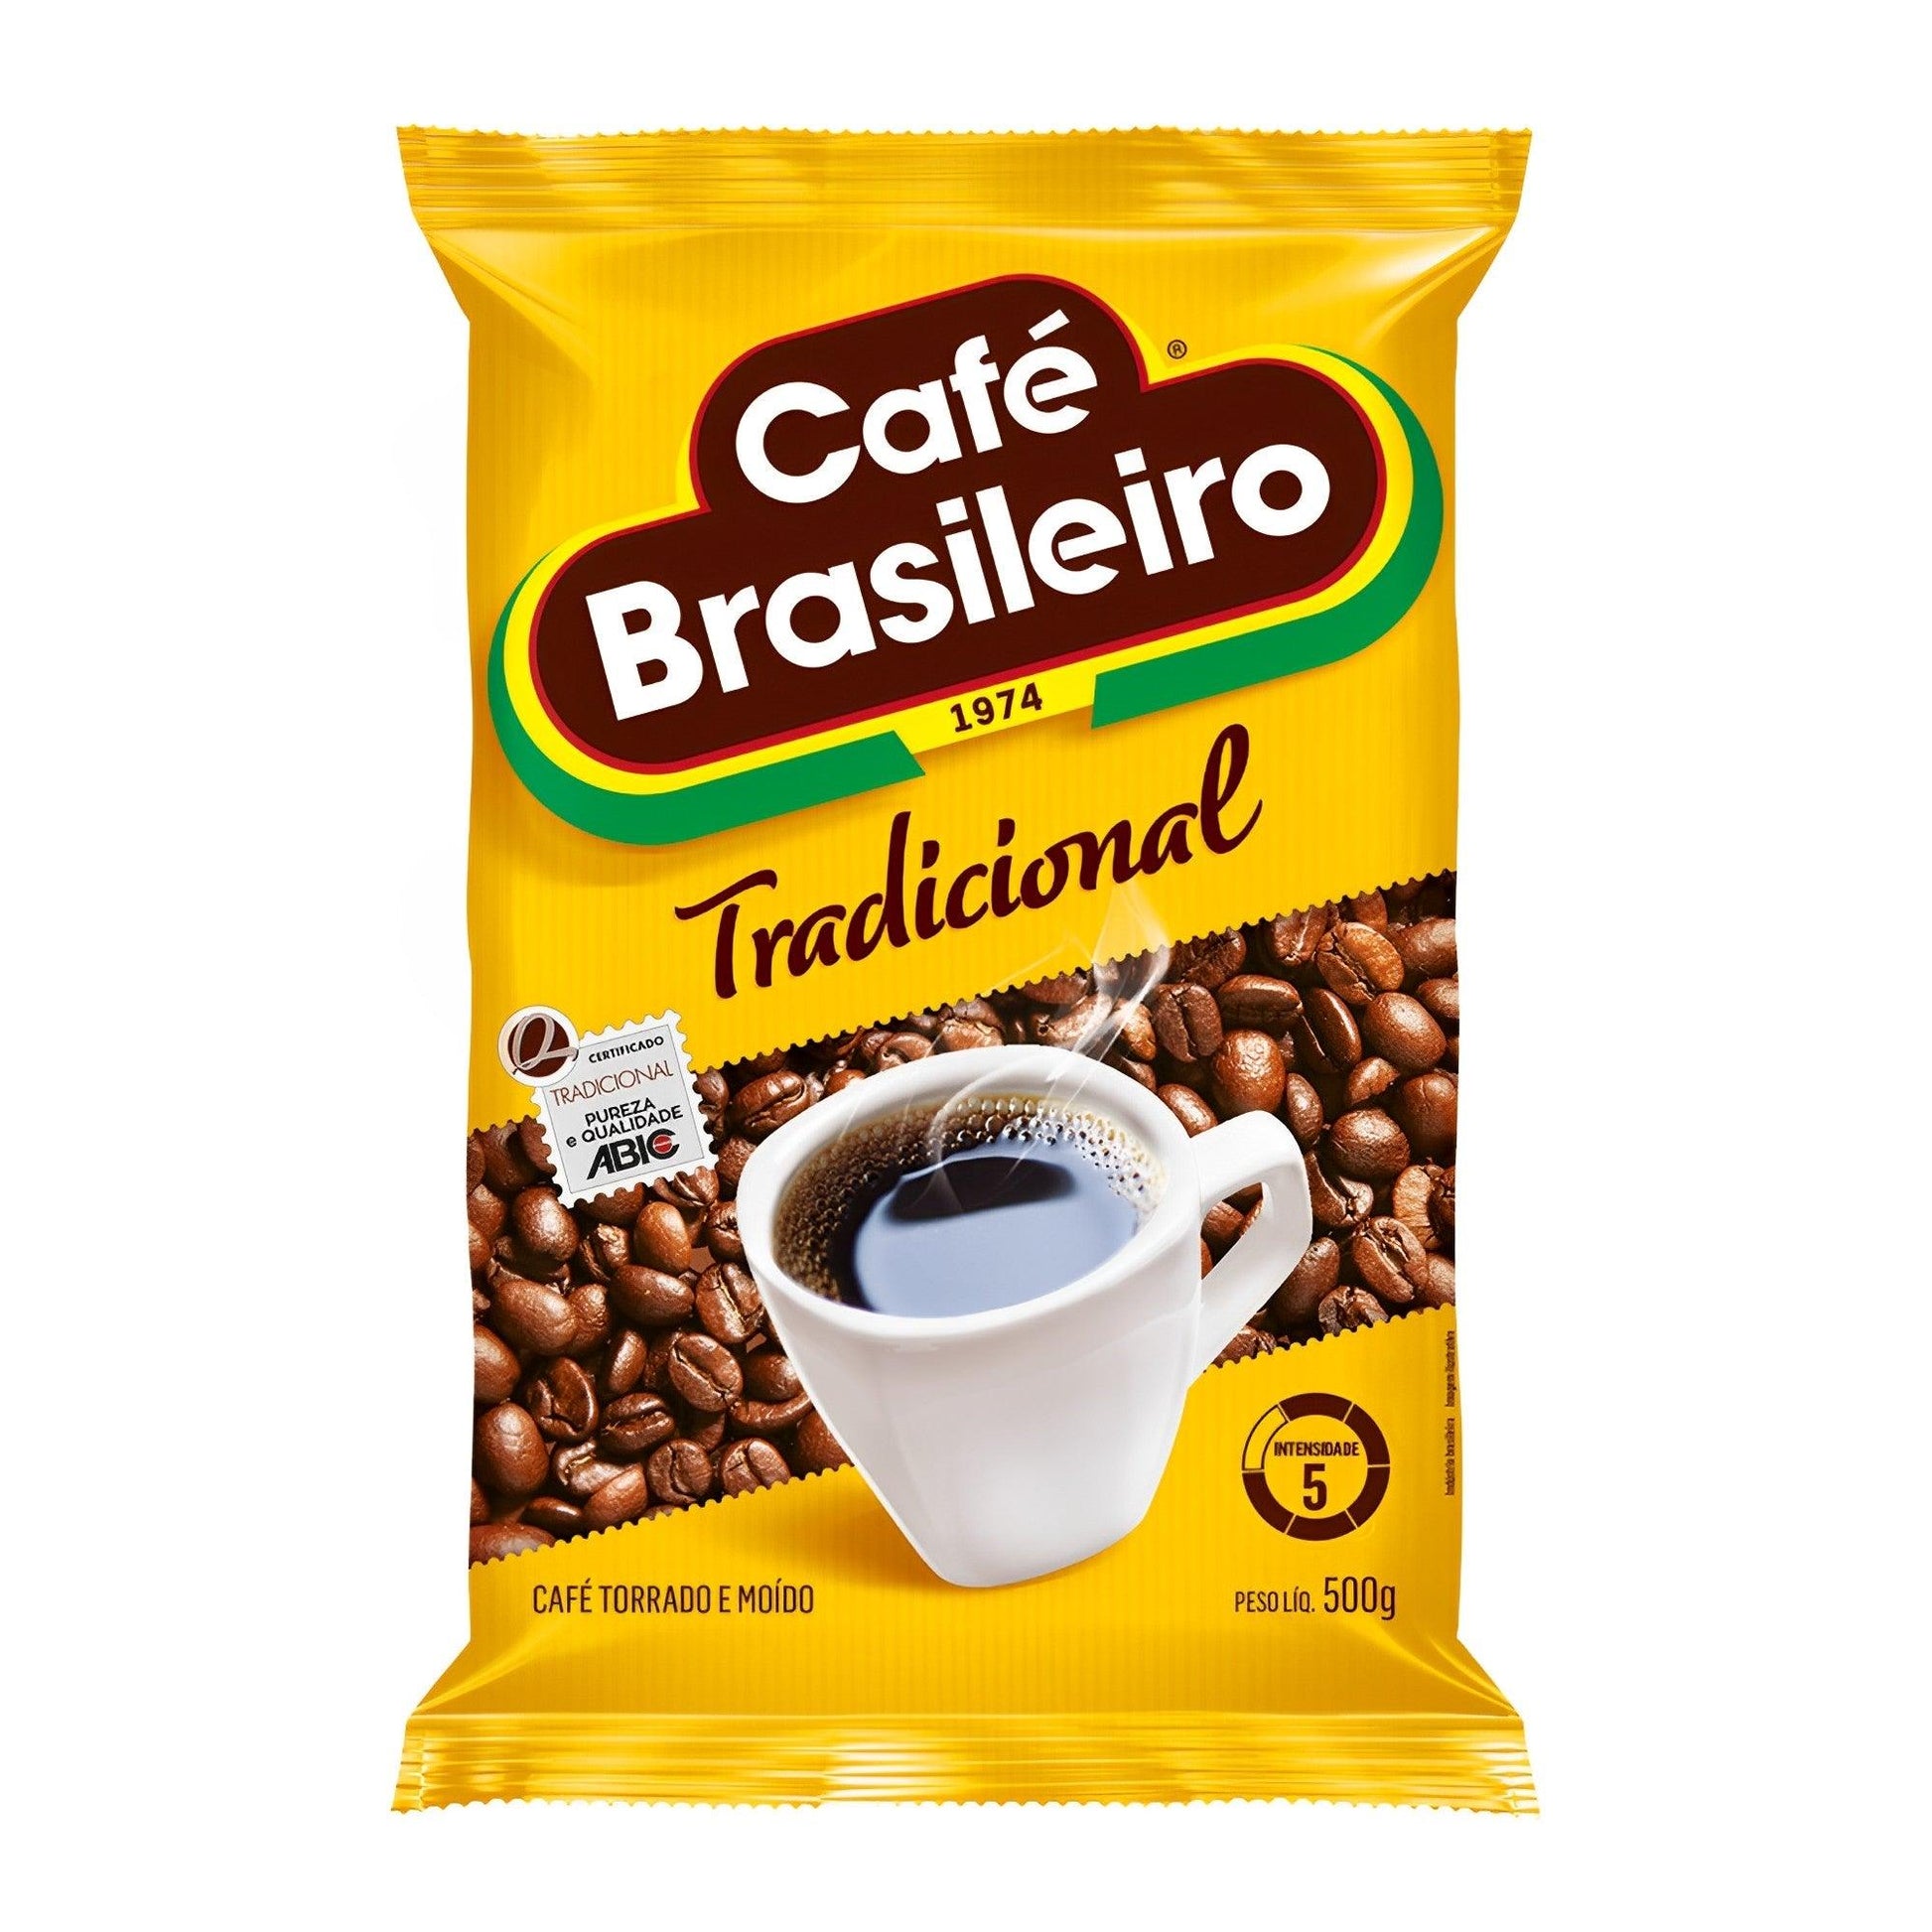 Café Brasileiro Traditional 17.64 oz. (Pack of 2) - Brazilian Shop